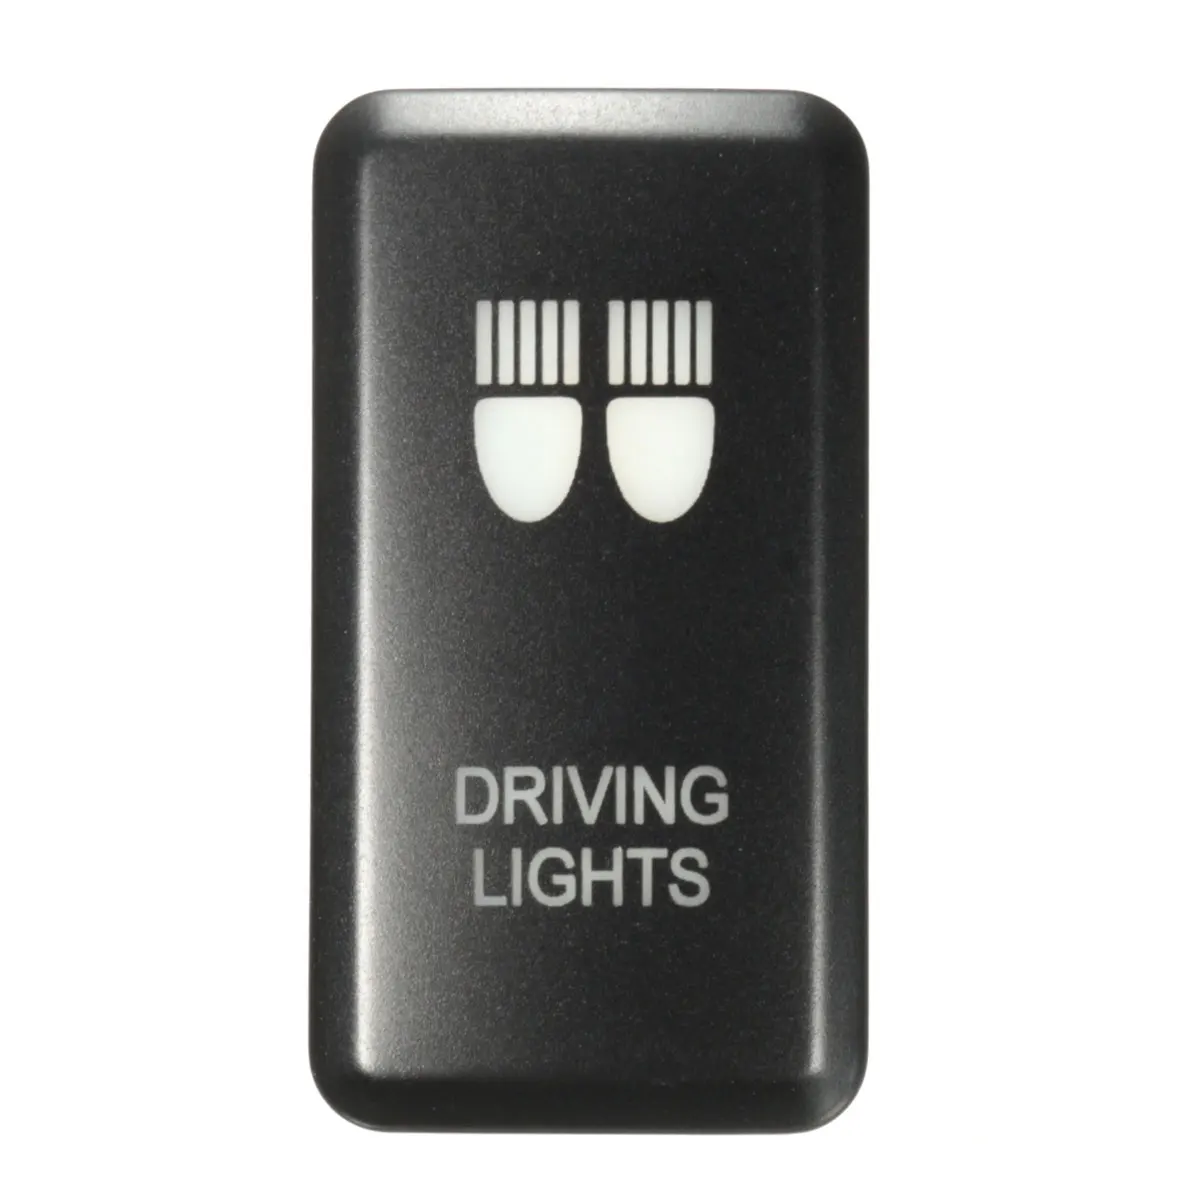 Светодиодный светильник-противотуманная фара для Toyota/Landcruiser/Hilux/Prado 120/FJ/CRUISE - Название цвета: Driving Light